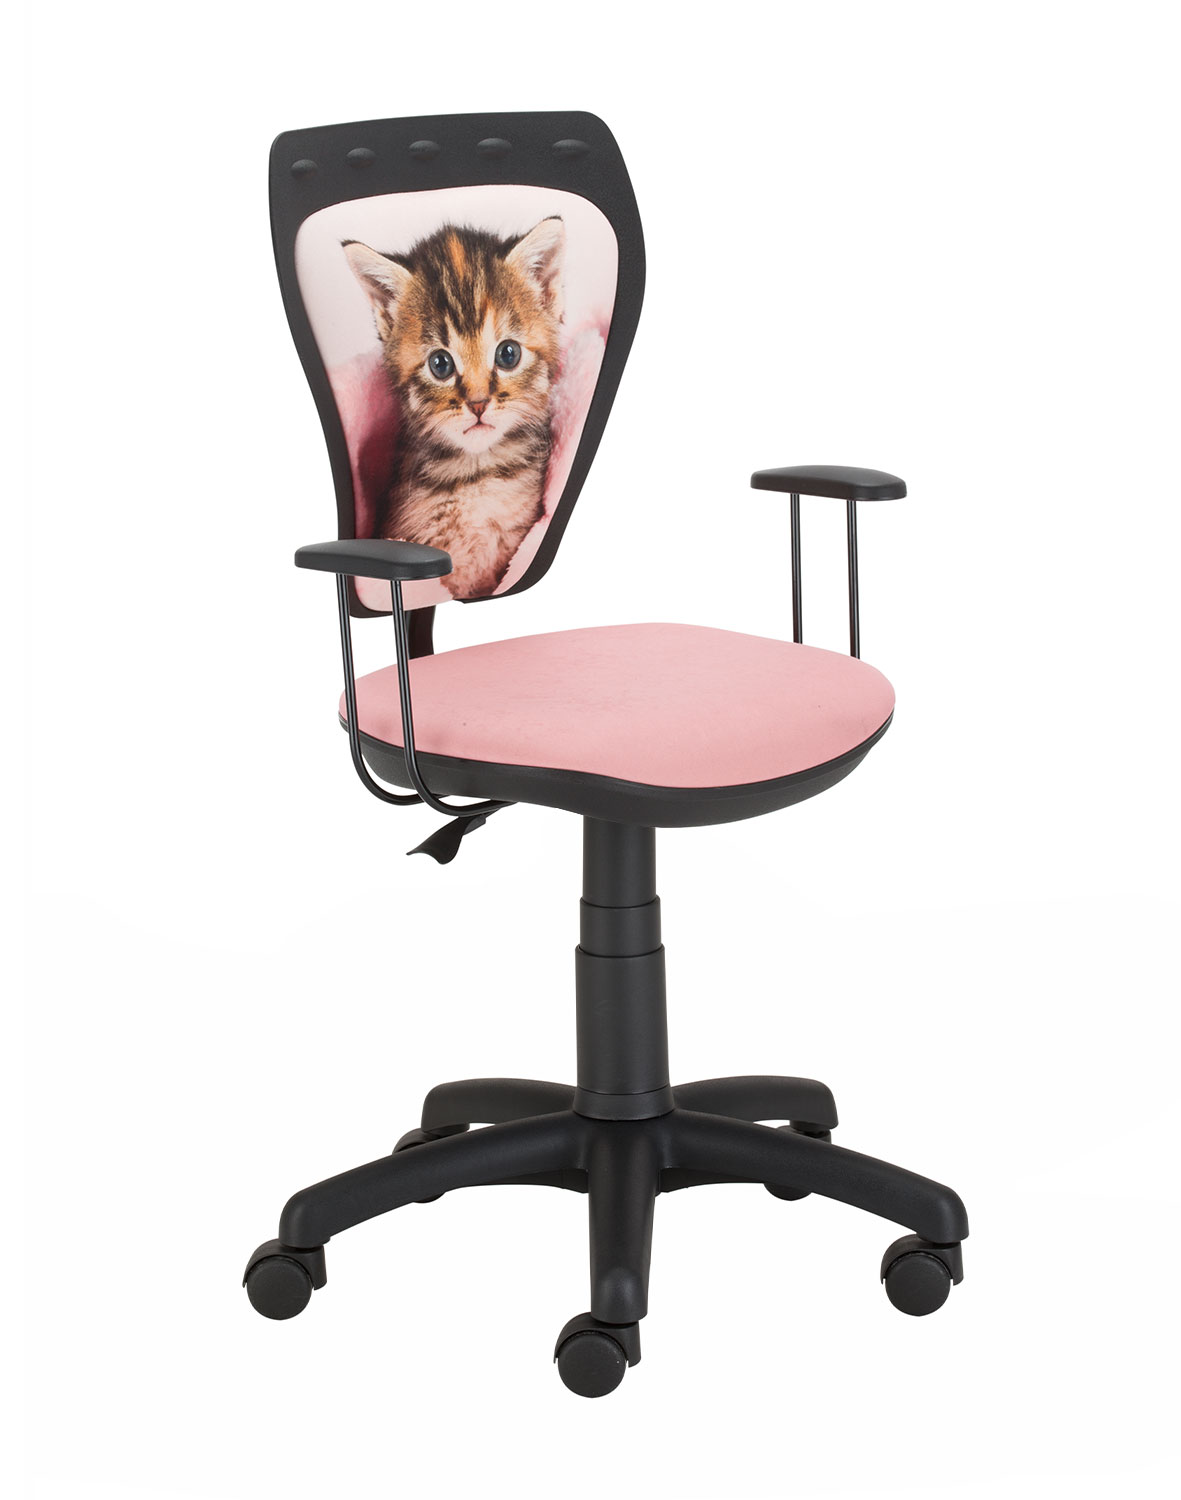 Židle Ministyle černá - kočka zabalená v dece